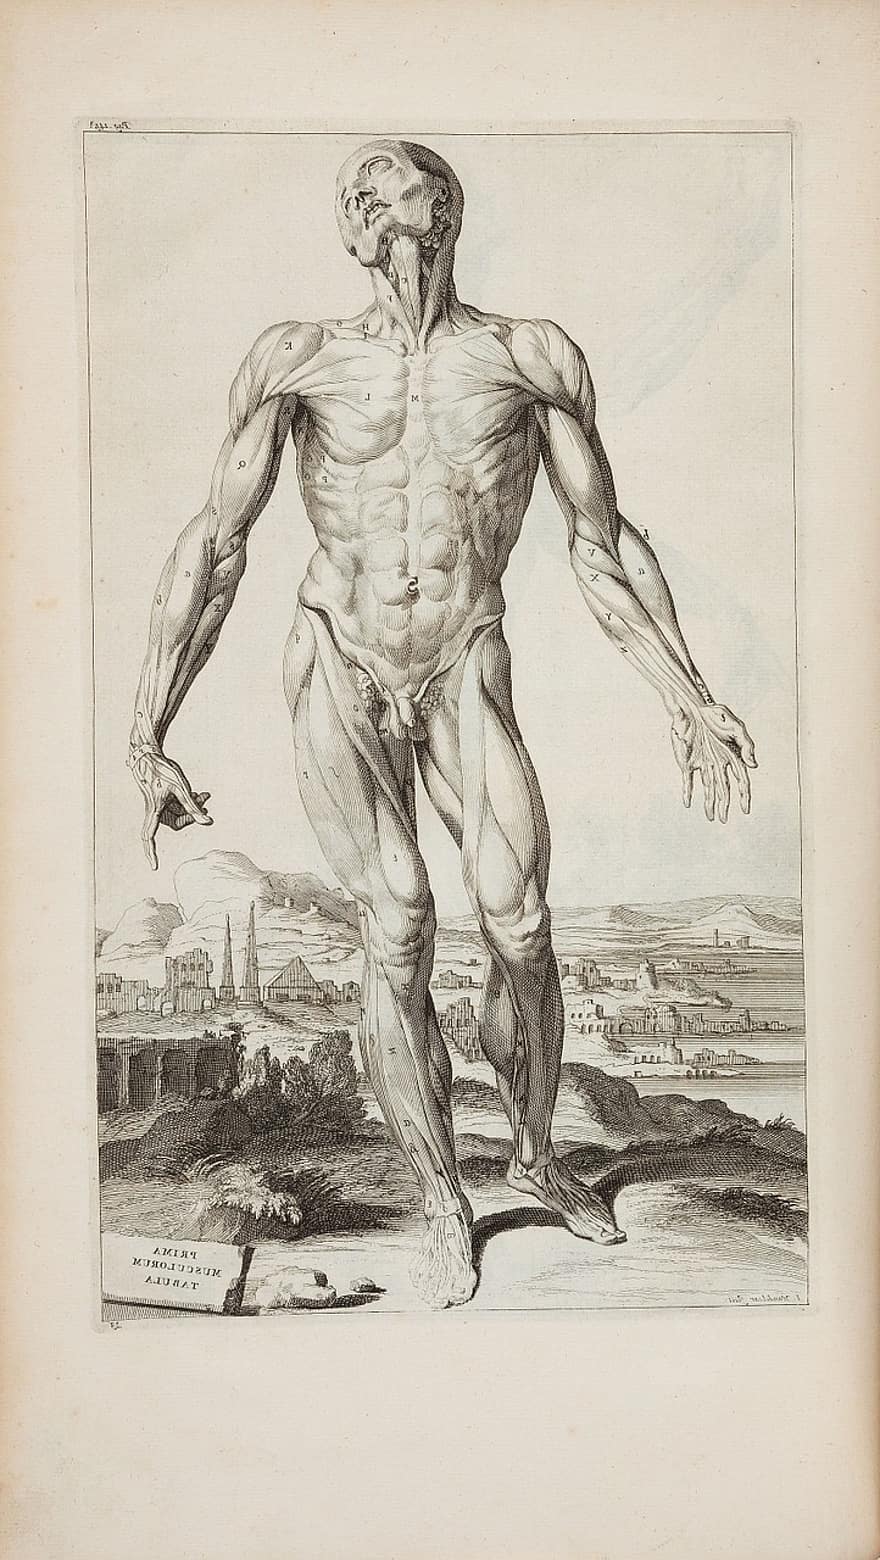 एंड्रियास वेसालियस, 1725 है, ओपेरा ओम्निया एनाटोमिका चिरुर्गिका, मानव शरीर रचना विज्ञान, एनाटॉमी ड्राइंग, एनाटॉमी, चित्रकारी, स्याही, विंटेज, पुराना, मानव